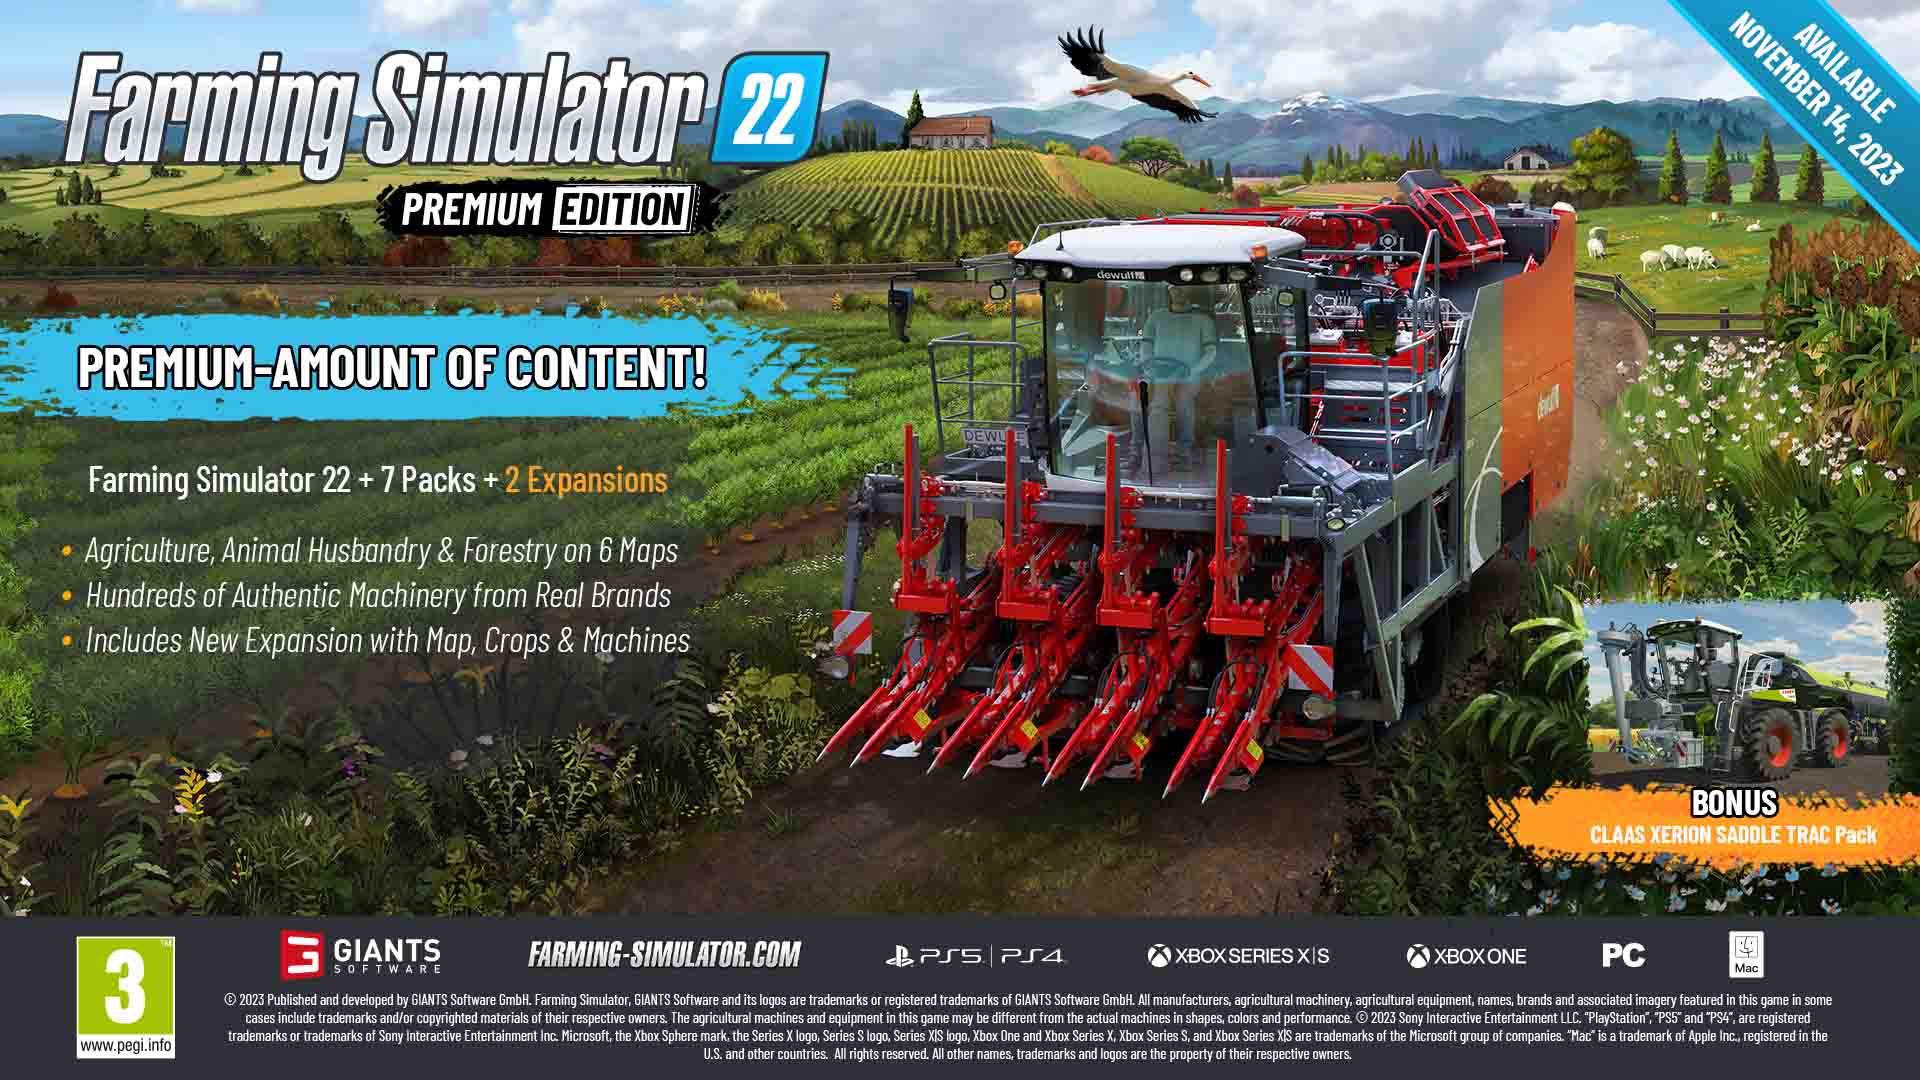 Farming Simulator 22 premium edition